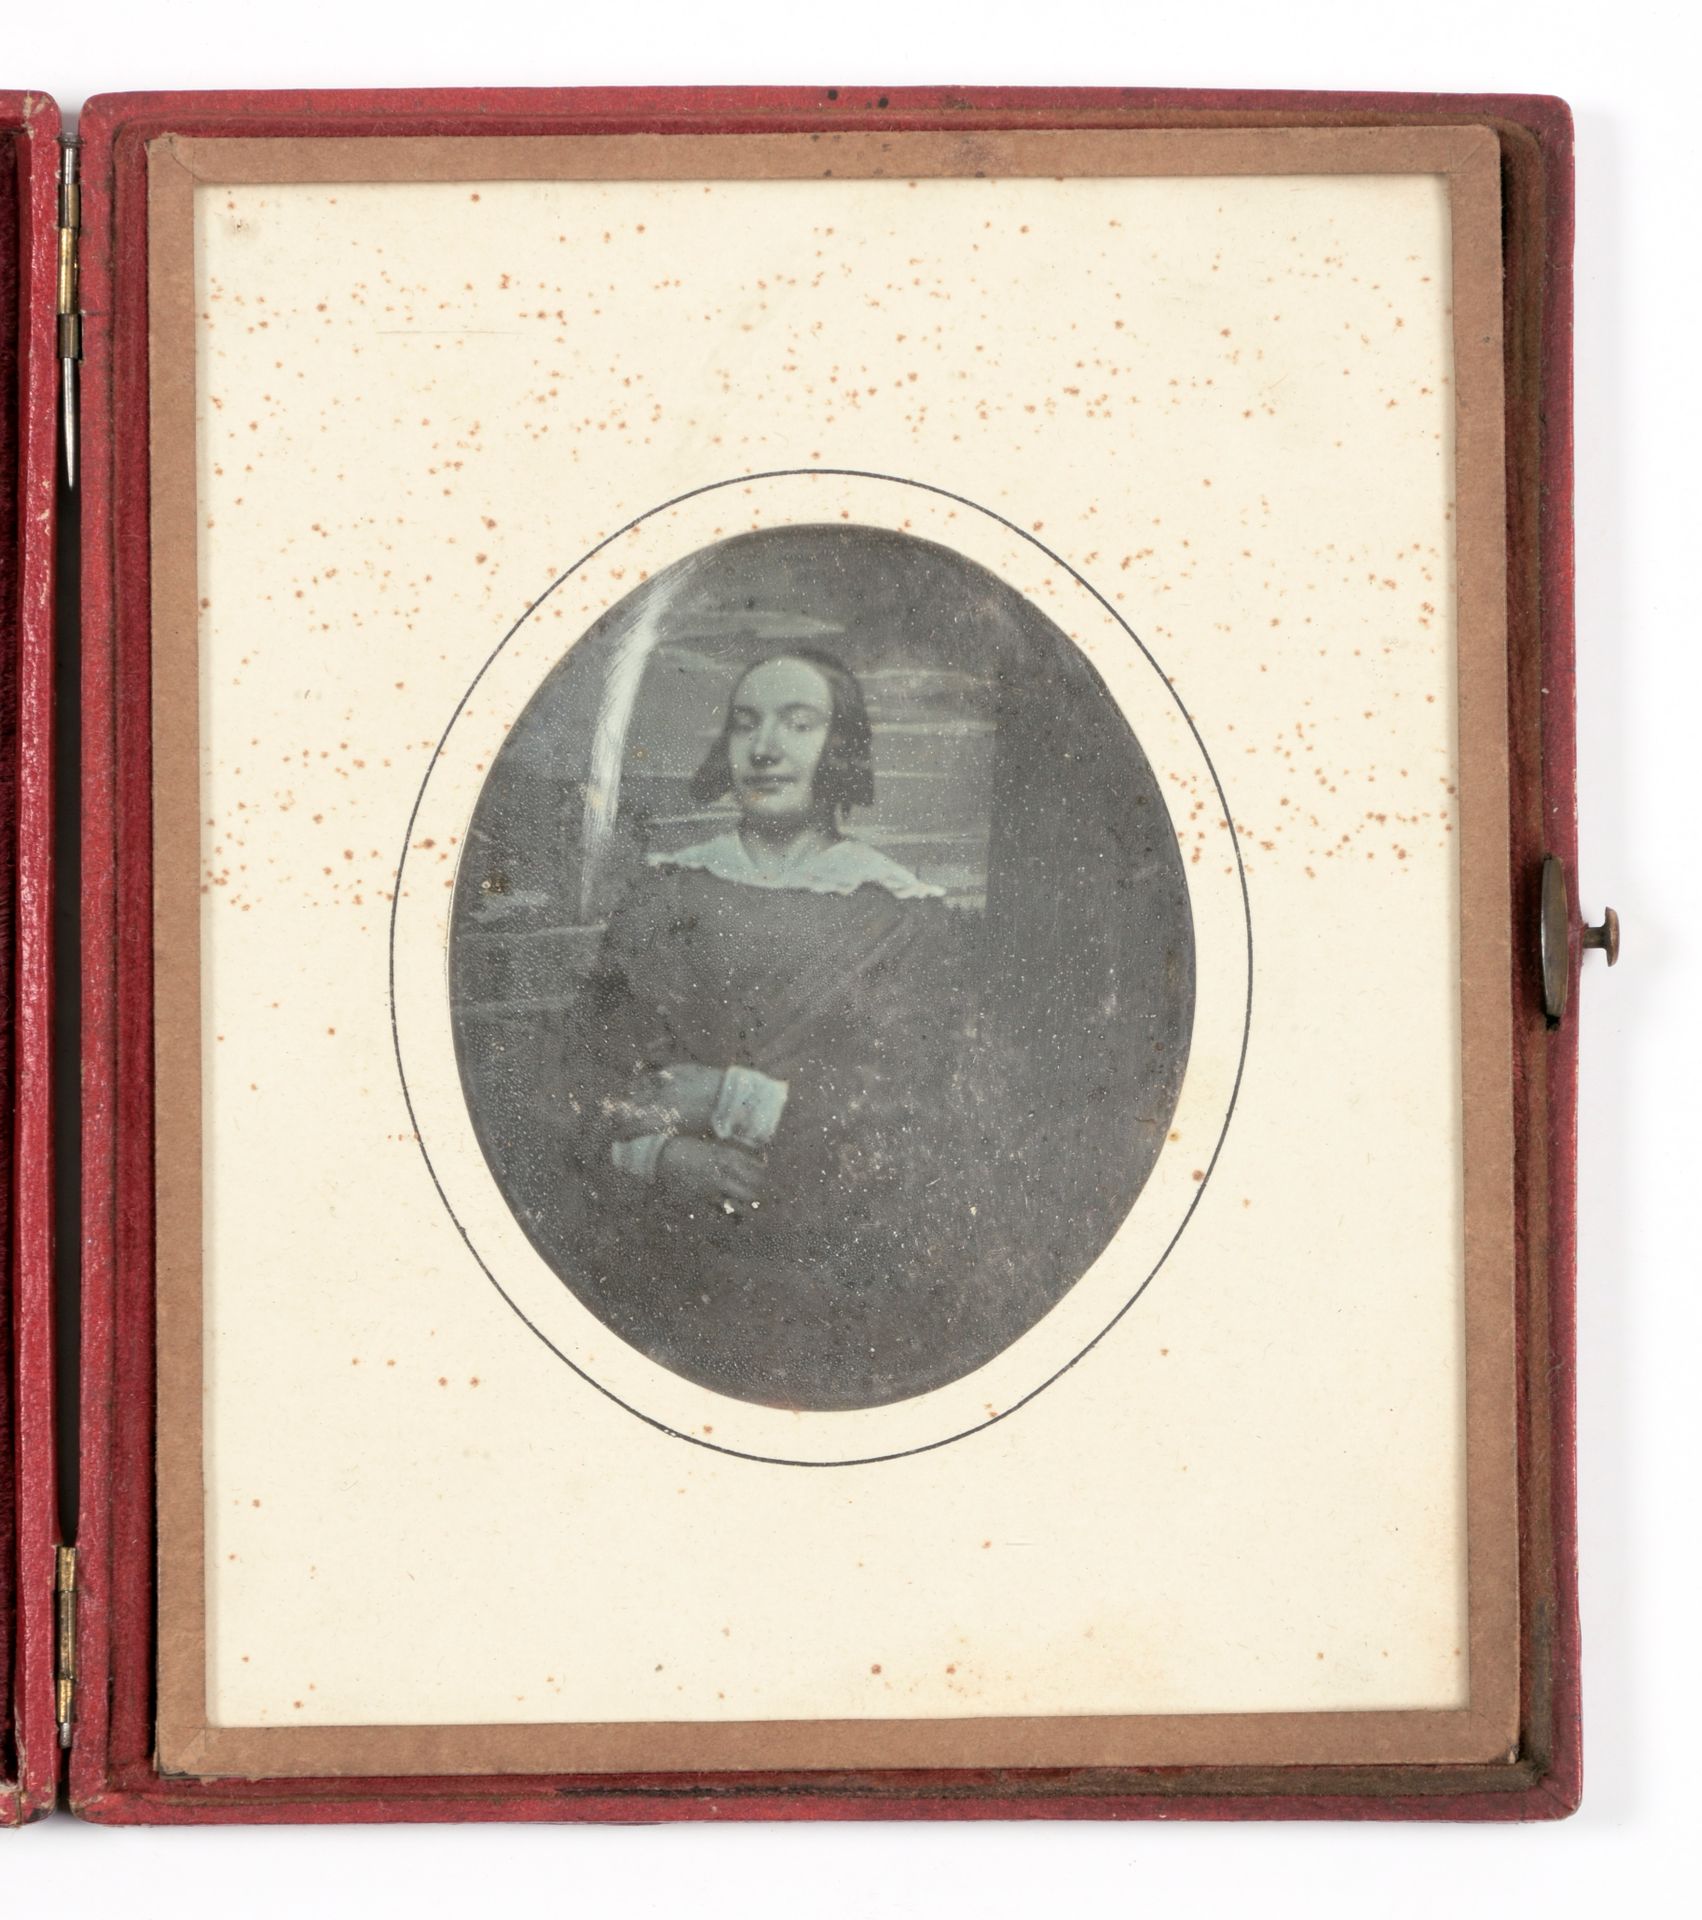 [FOTO'S] Daguerreotypie van jonge vrouw

Formaat (13 x 11.5 cm) in rood maroquin&hellip;